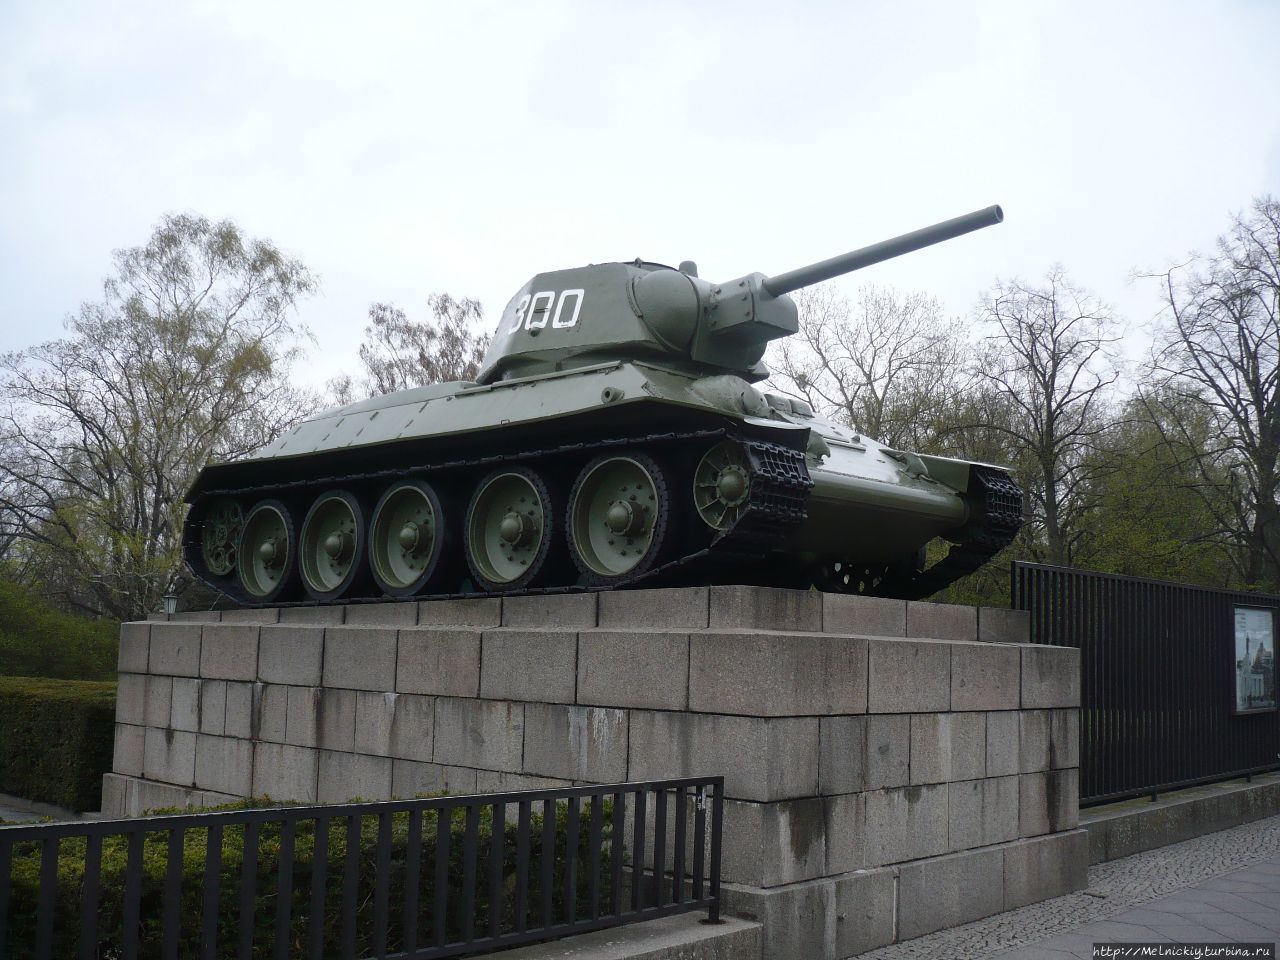 Мемориал павшим советским воинам в Тиргартене Берлин, Германия